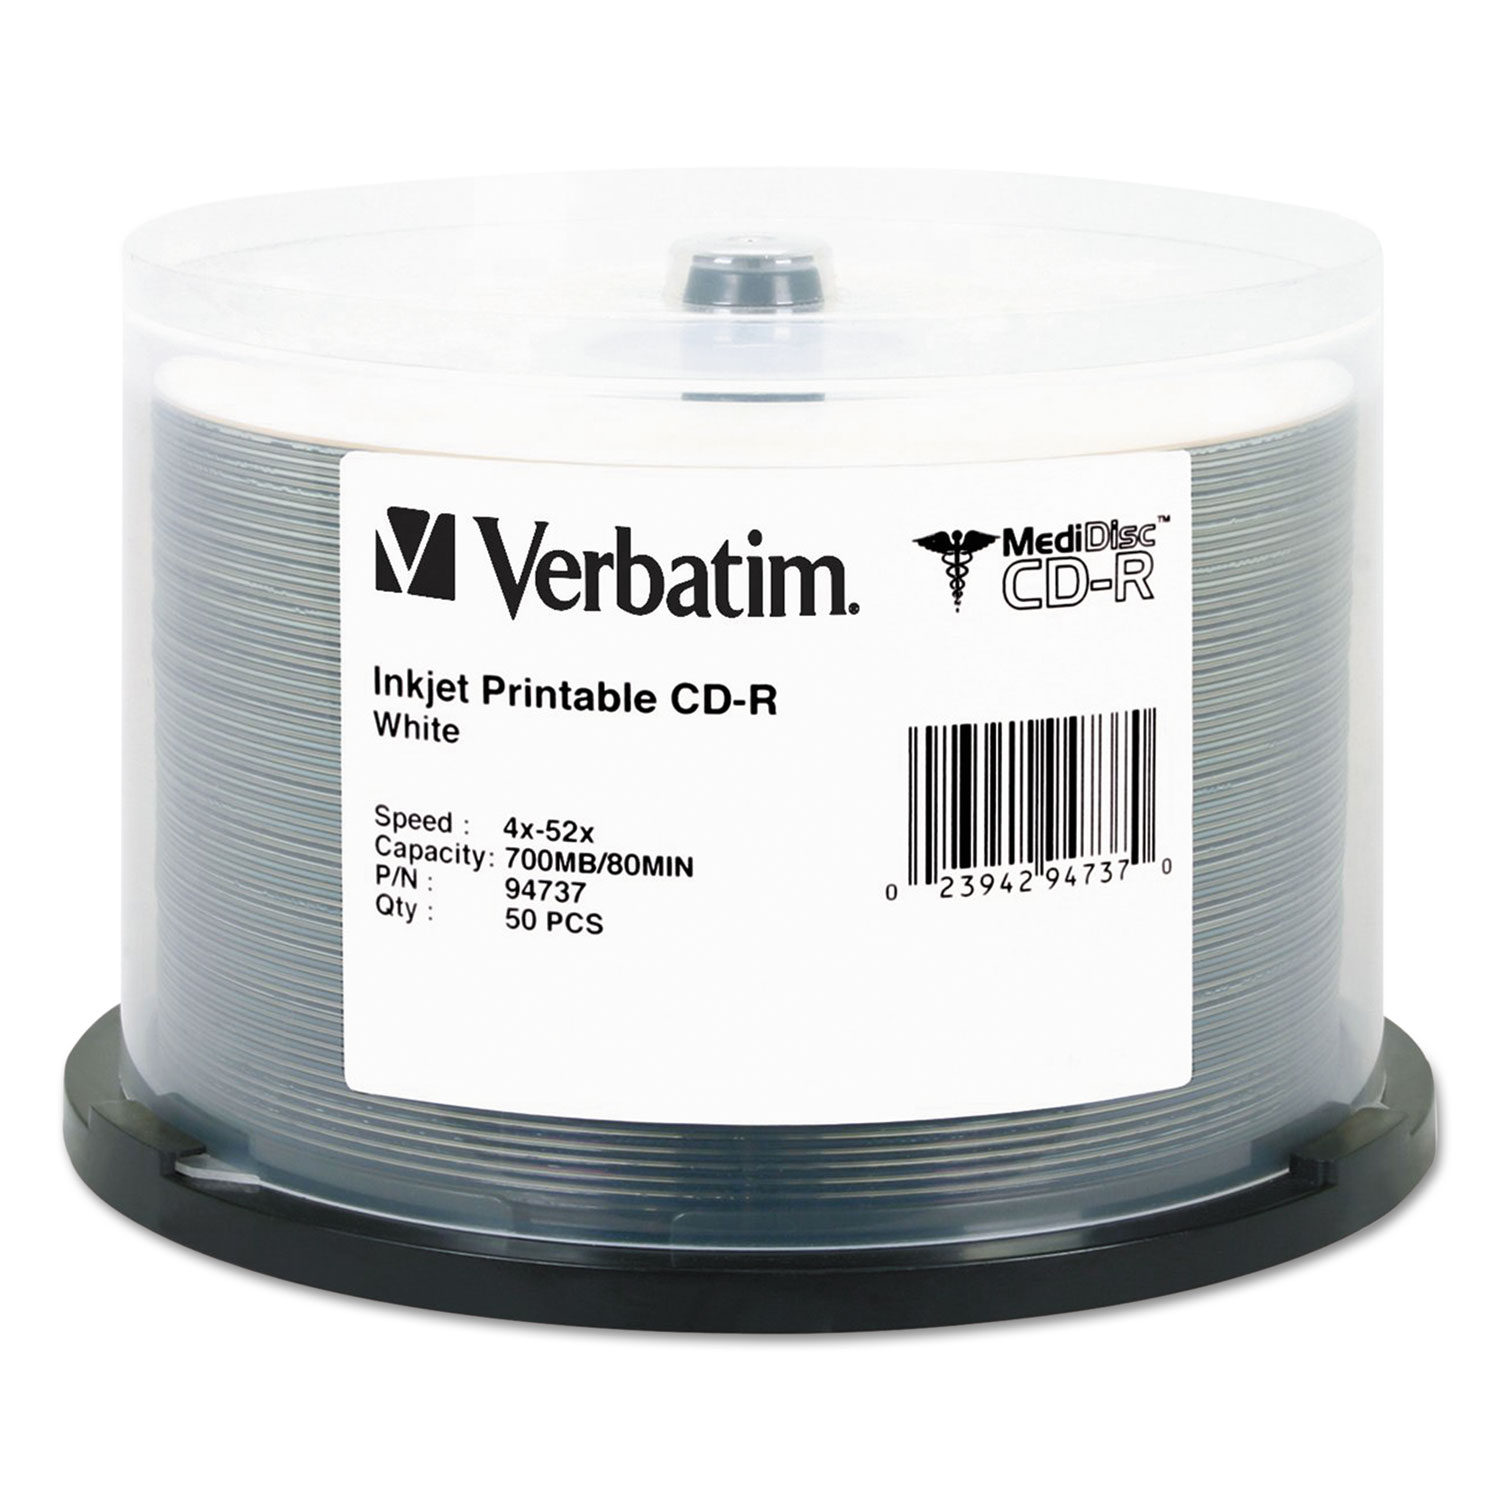  Verbatim 94737 MediDisc CD-R, 700MB, 52X, White Inkjet with Branded Hub, 50/PK Spindle (VER94737) 